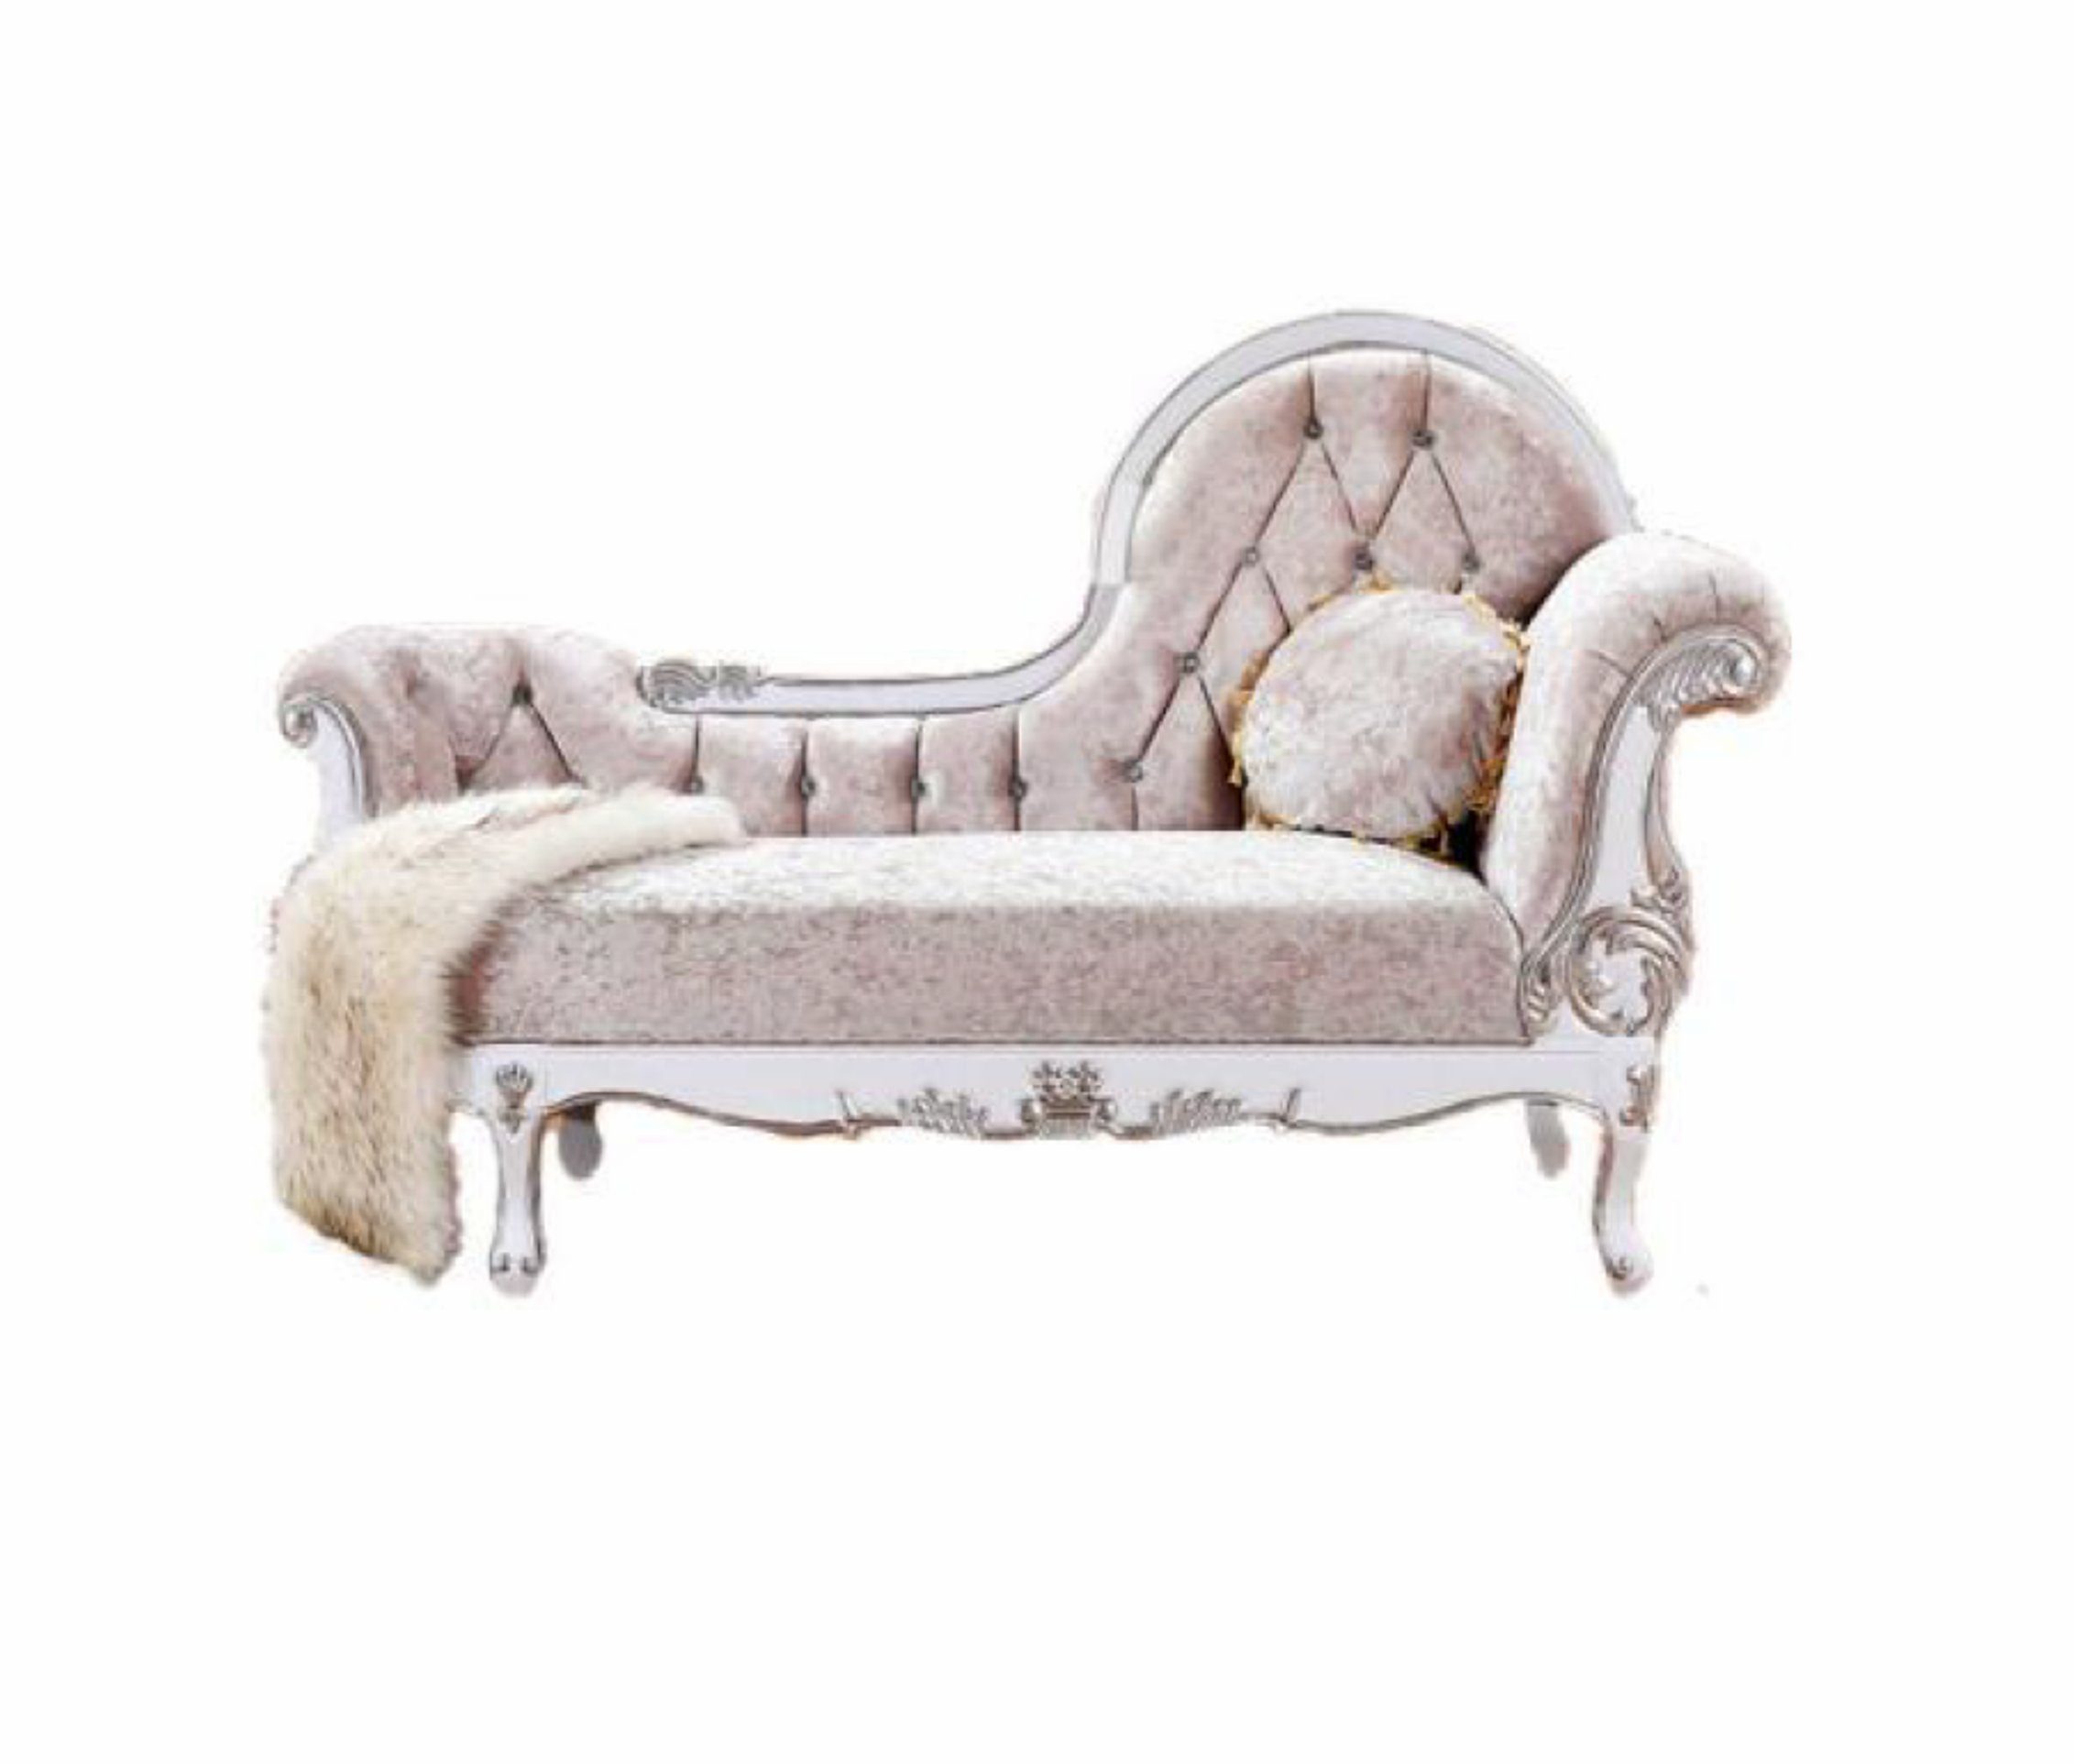 JVmoebel Chaiselongue Chaiselongue Chesterfield Récamière antik stil Edle Chaise Longue Sofa